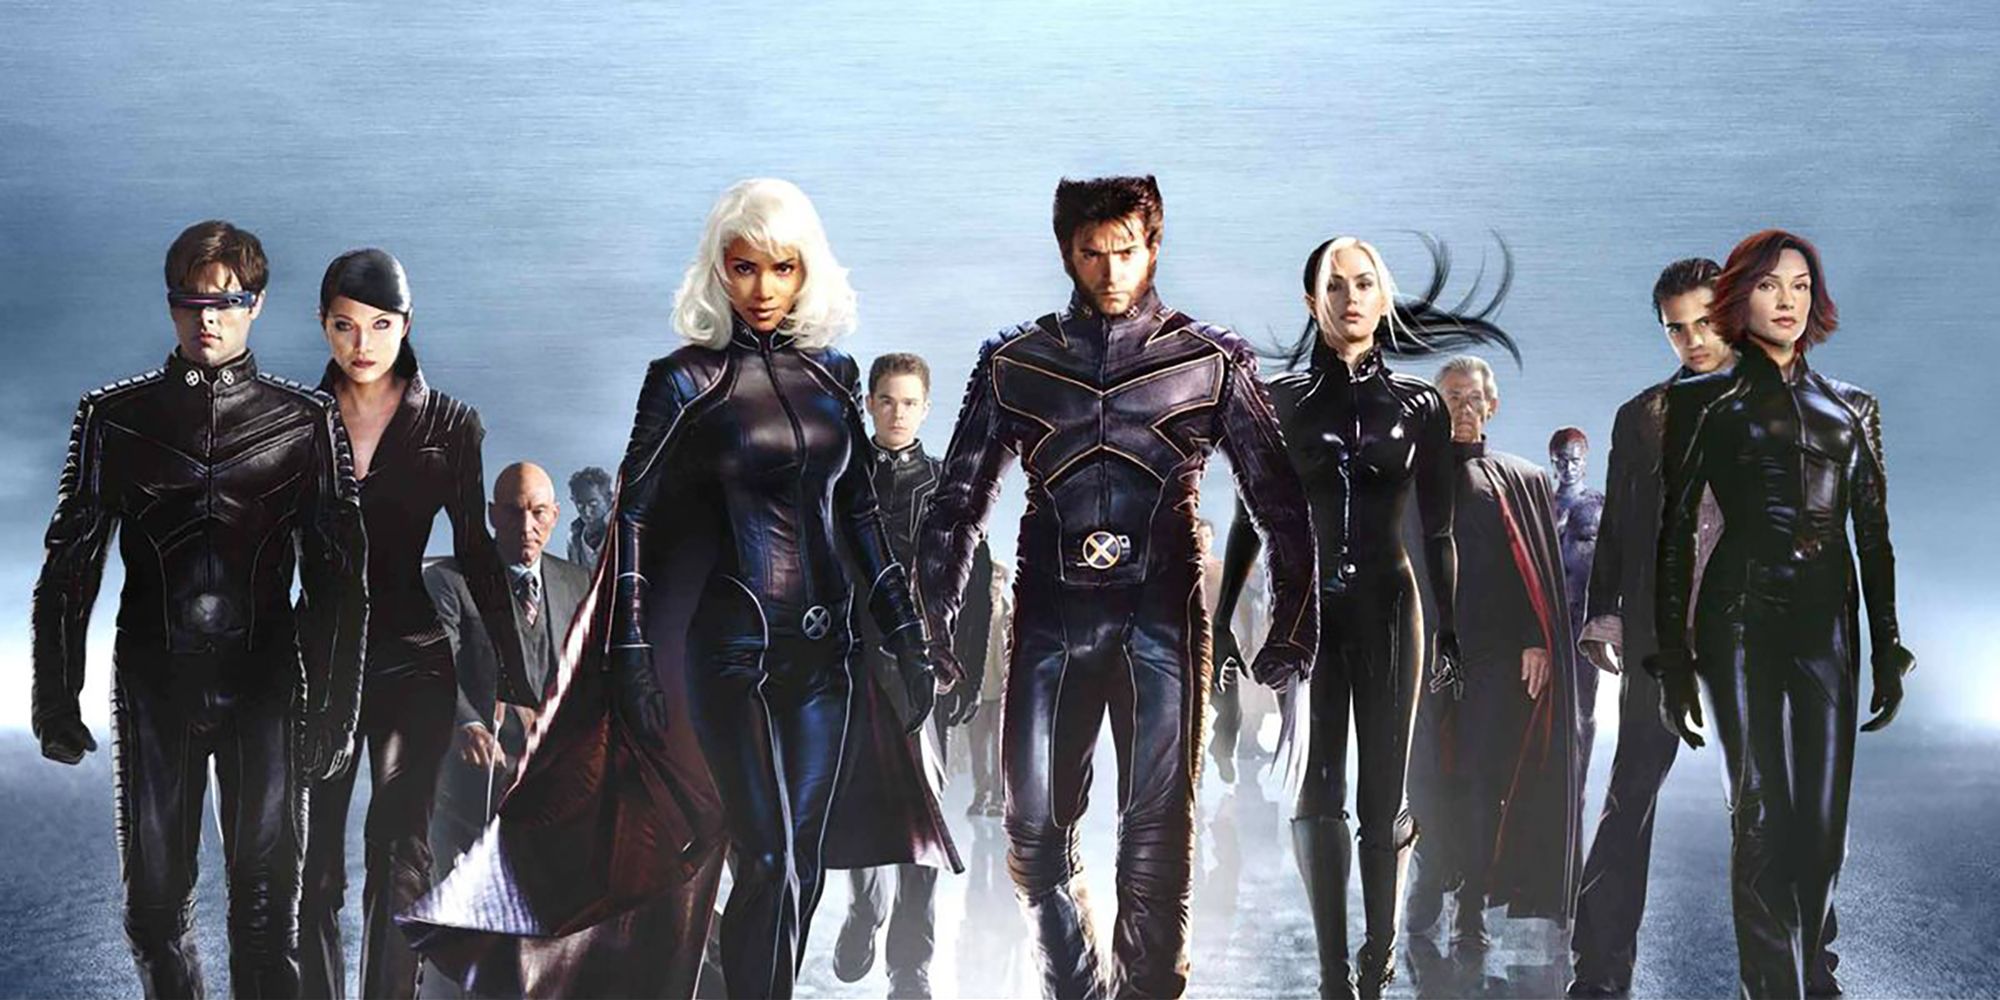 The X-Men Trilogy Cast